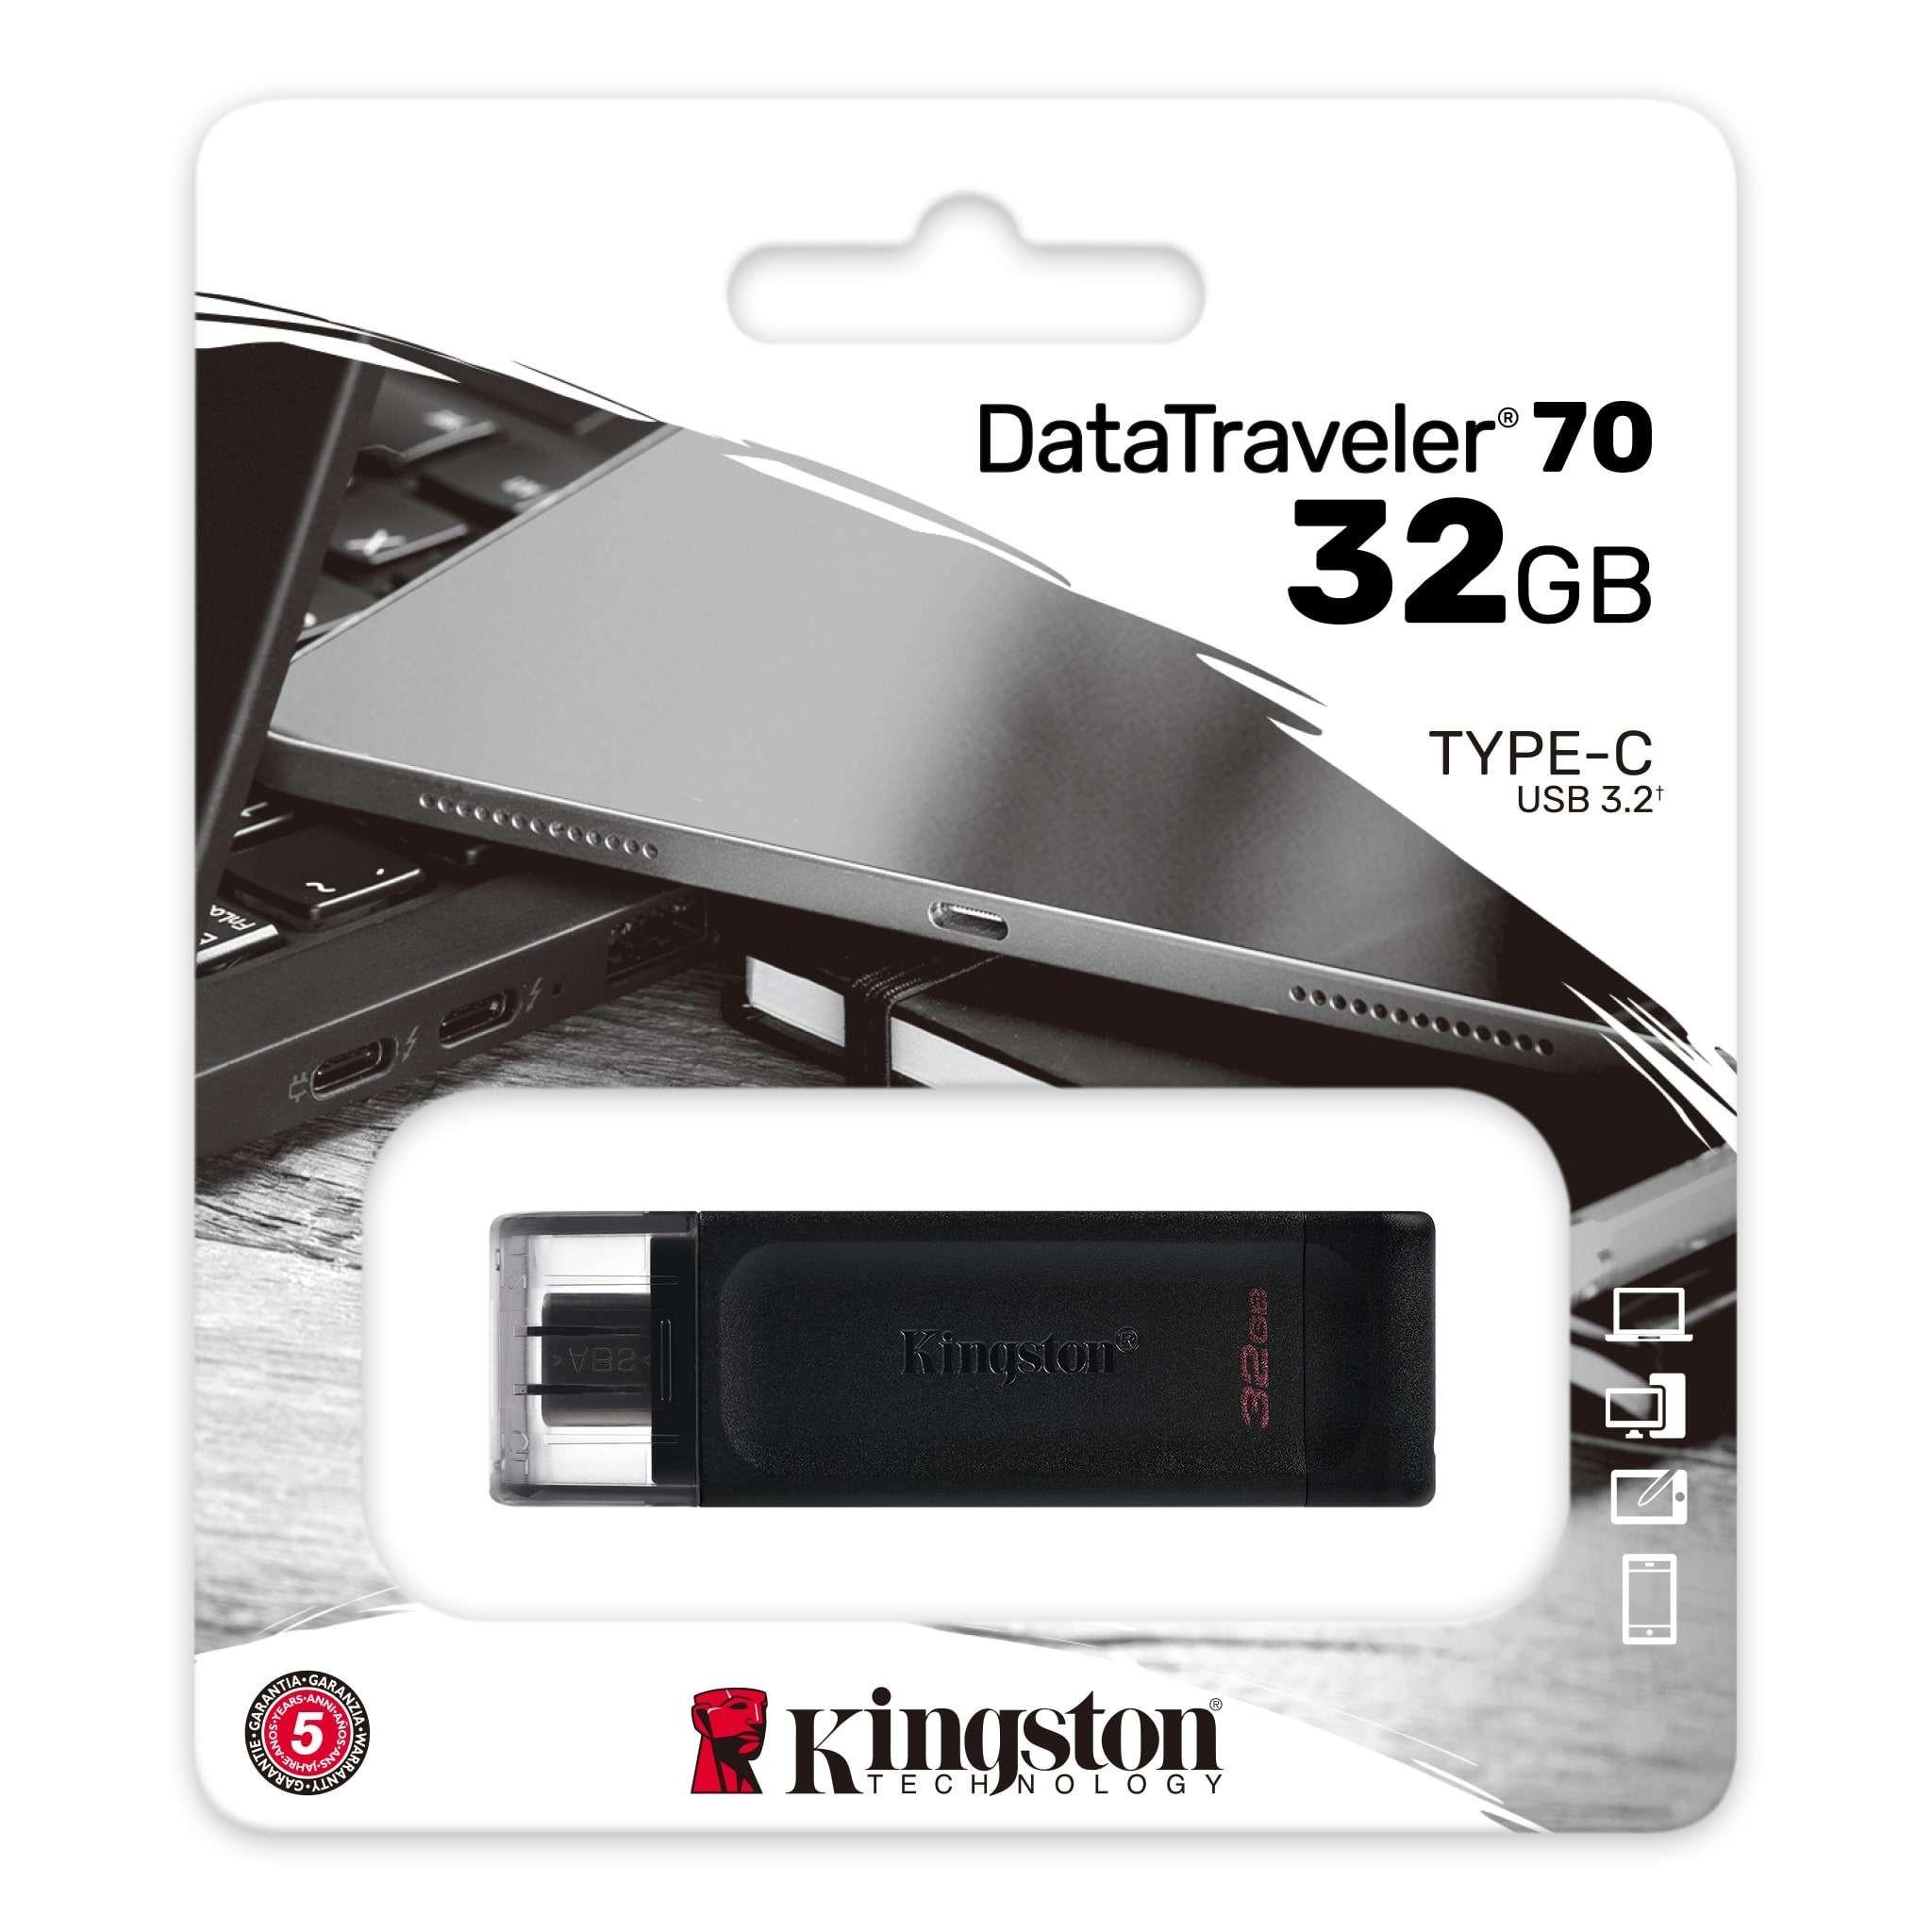 PENDRIVE USB-C 3.2 32GB KINGSTON DT 70